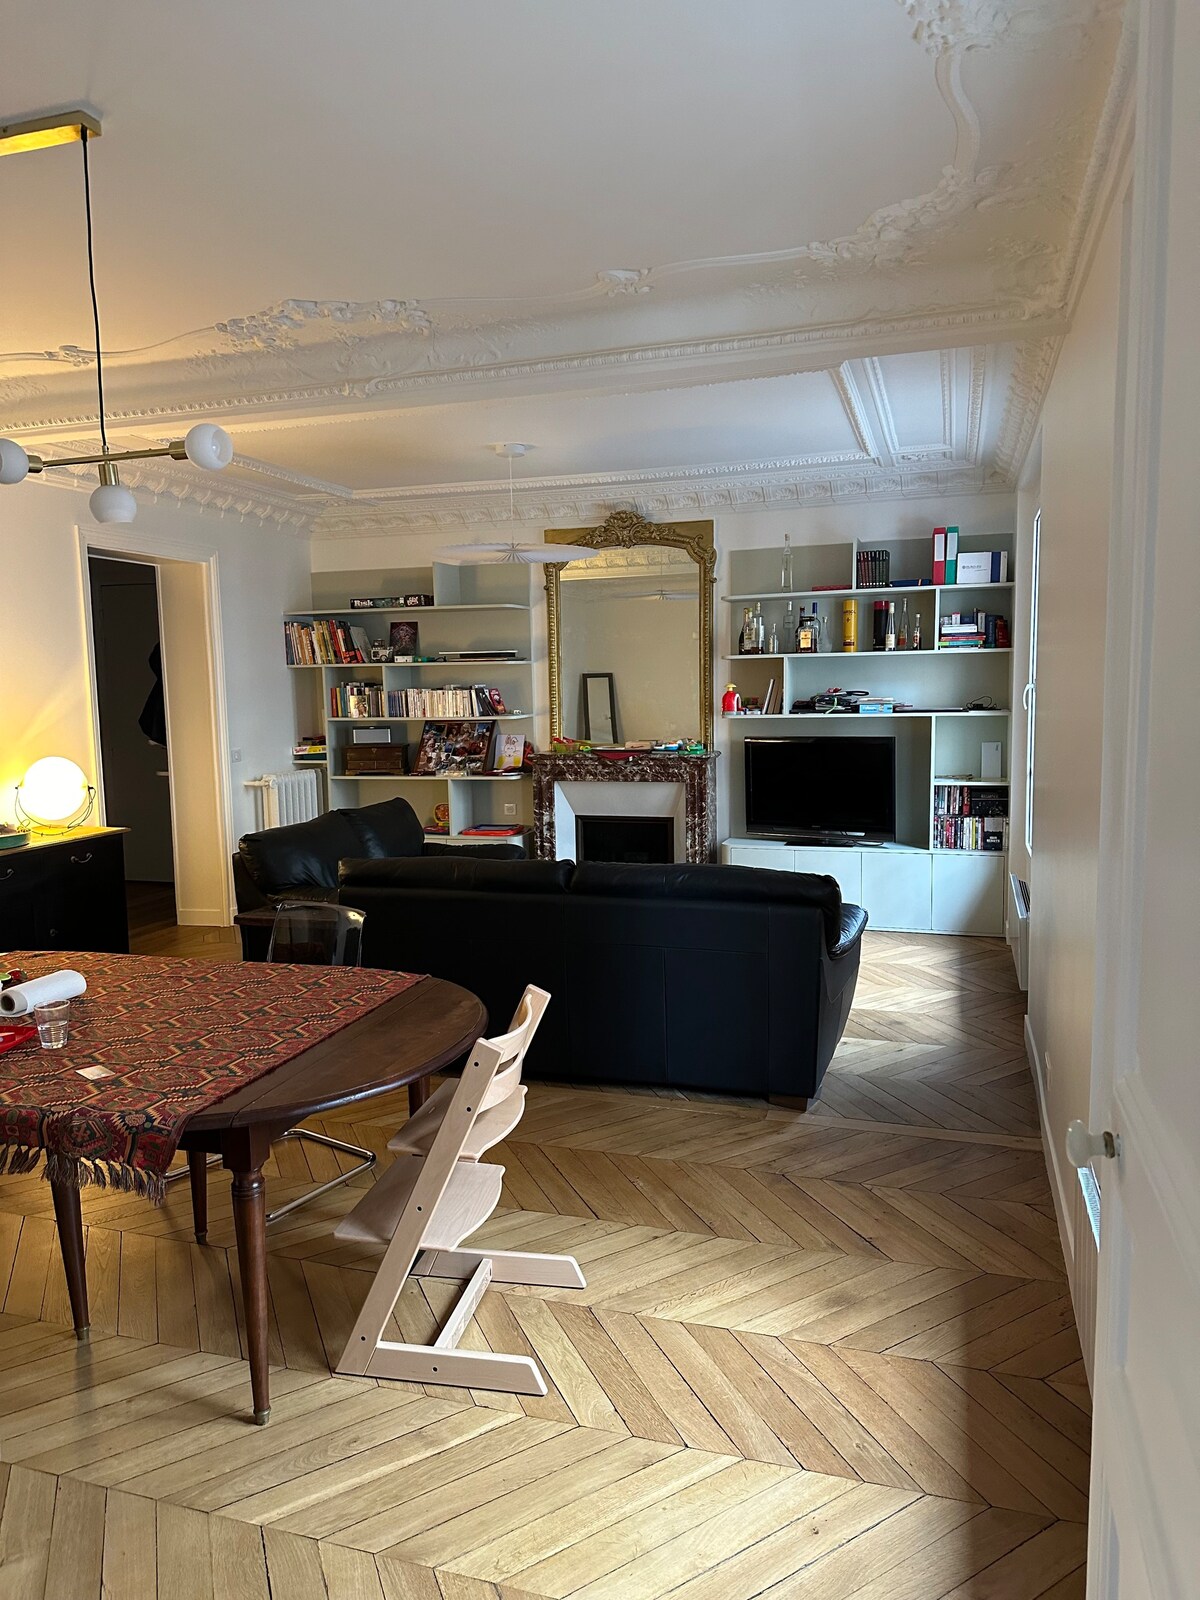 3 bedrooms flat in Montmartre